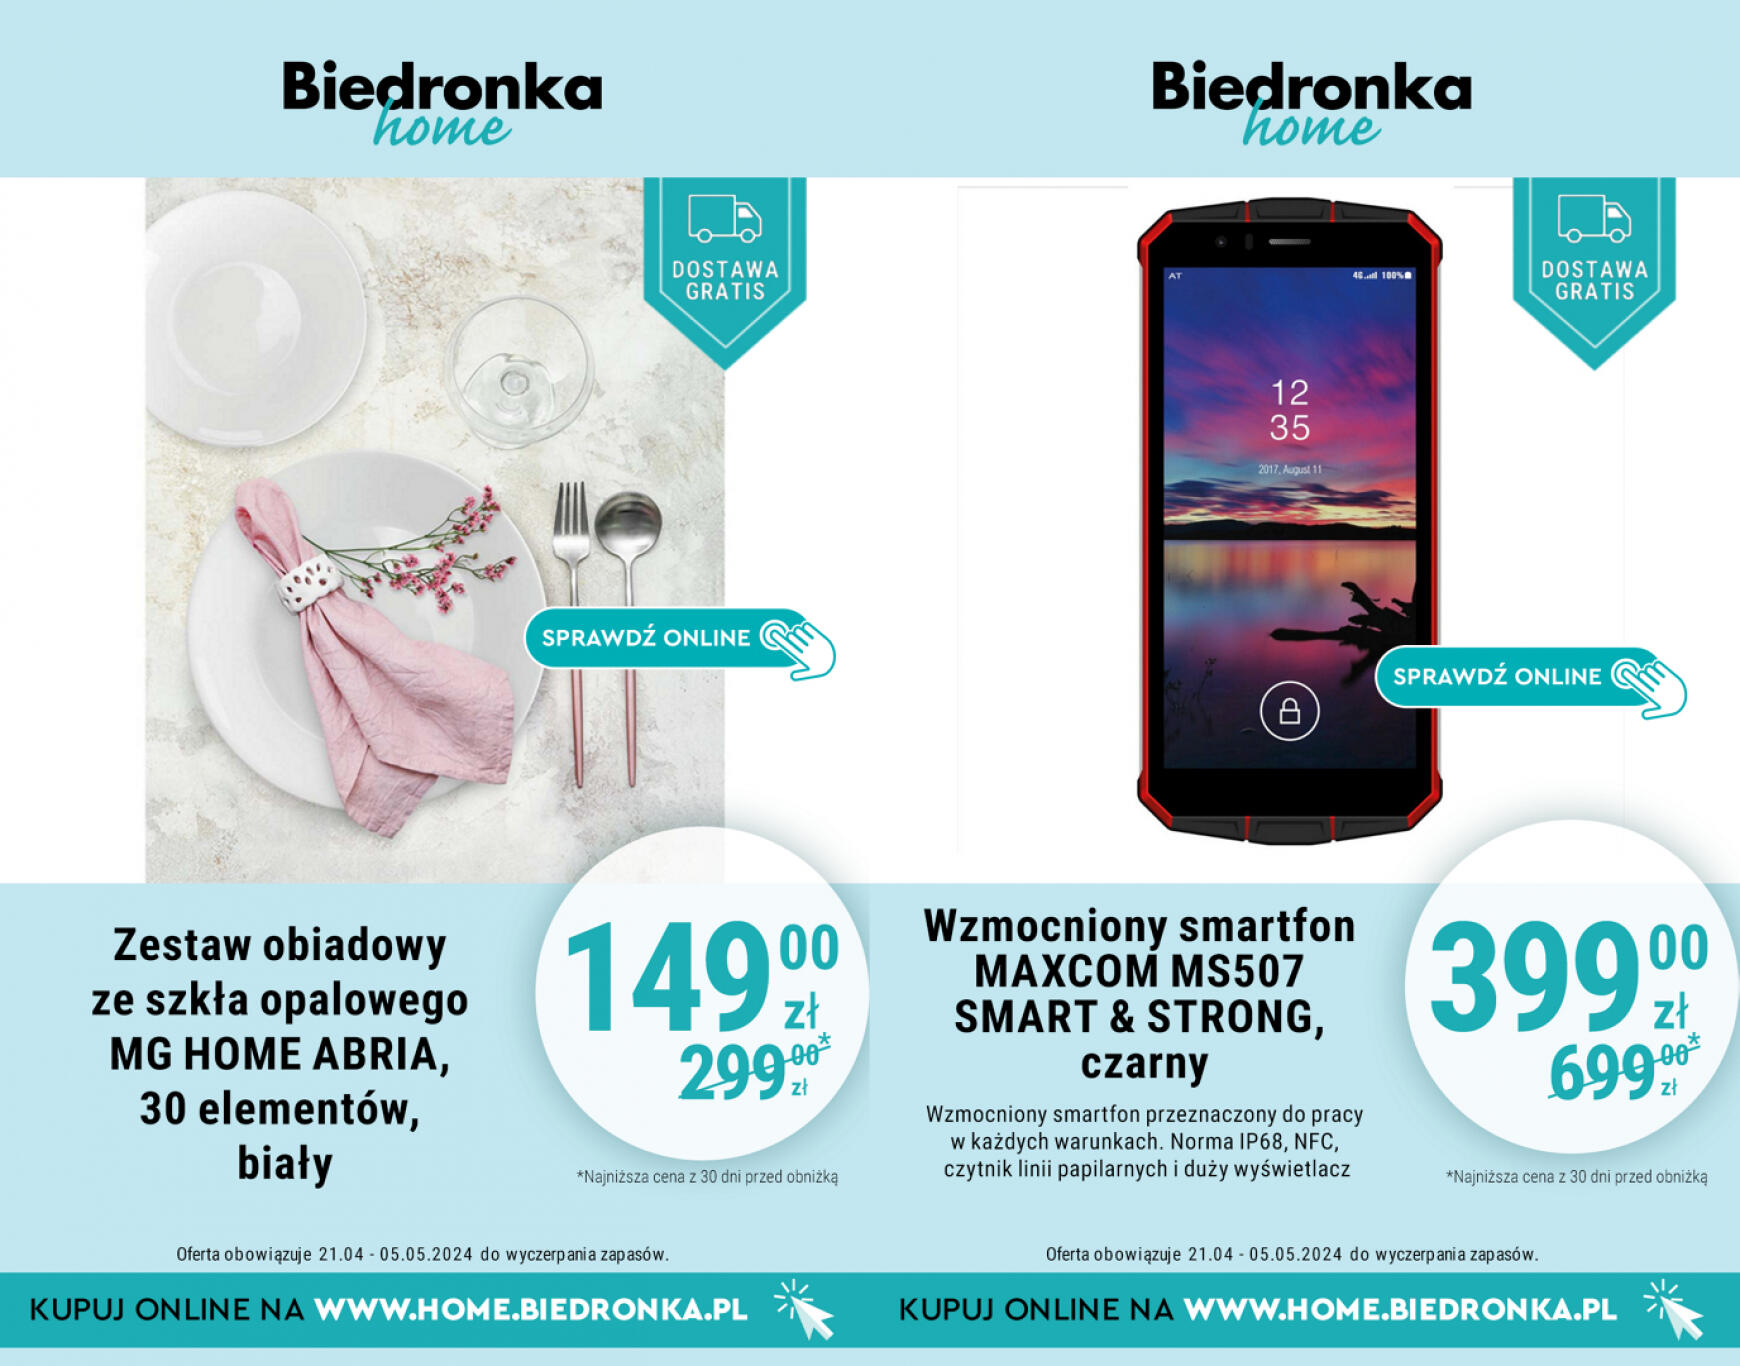 biedronka - Biedronka Home gazetka aktualna ważna od 21.04. - 12.05. - page: 6